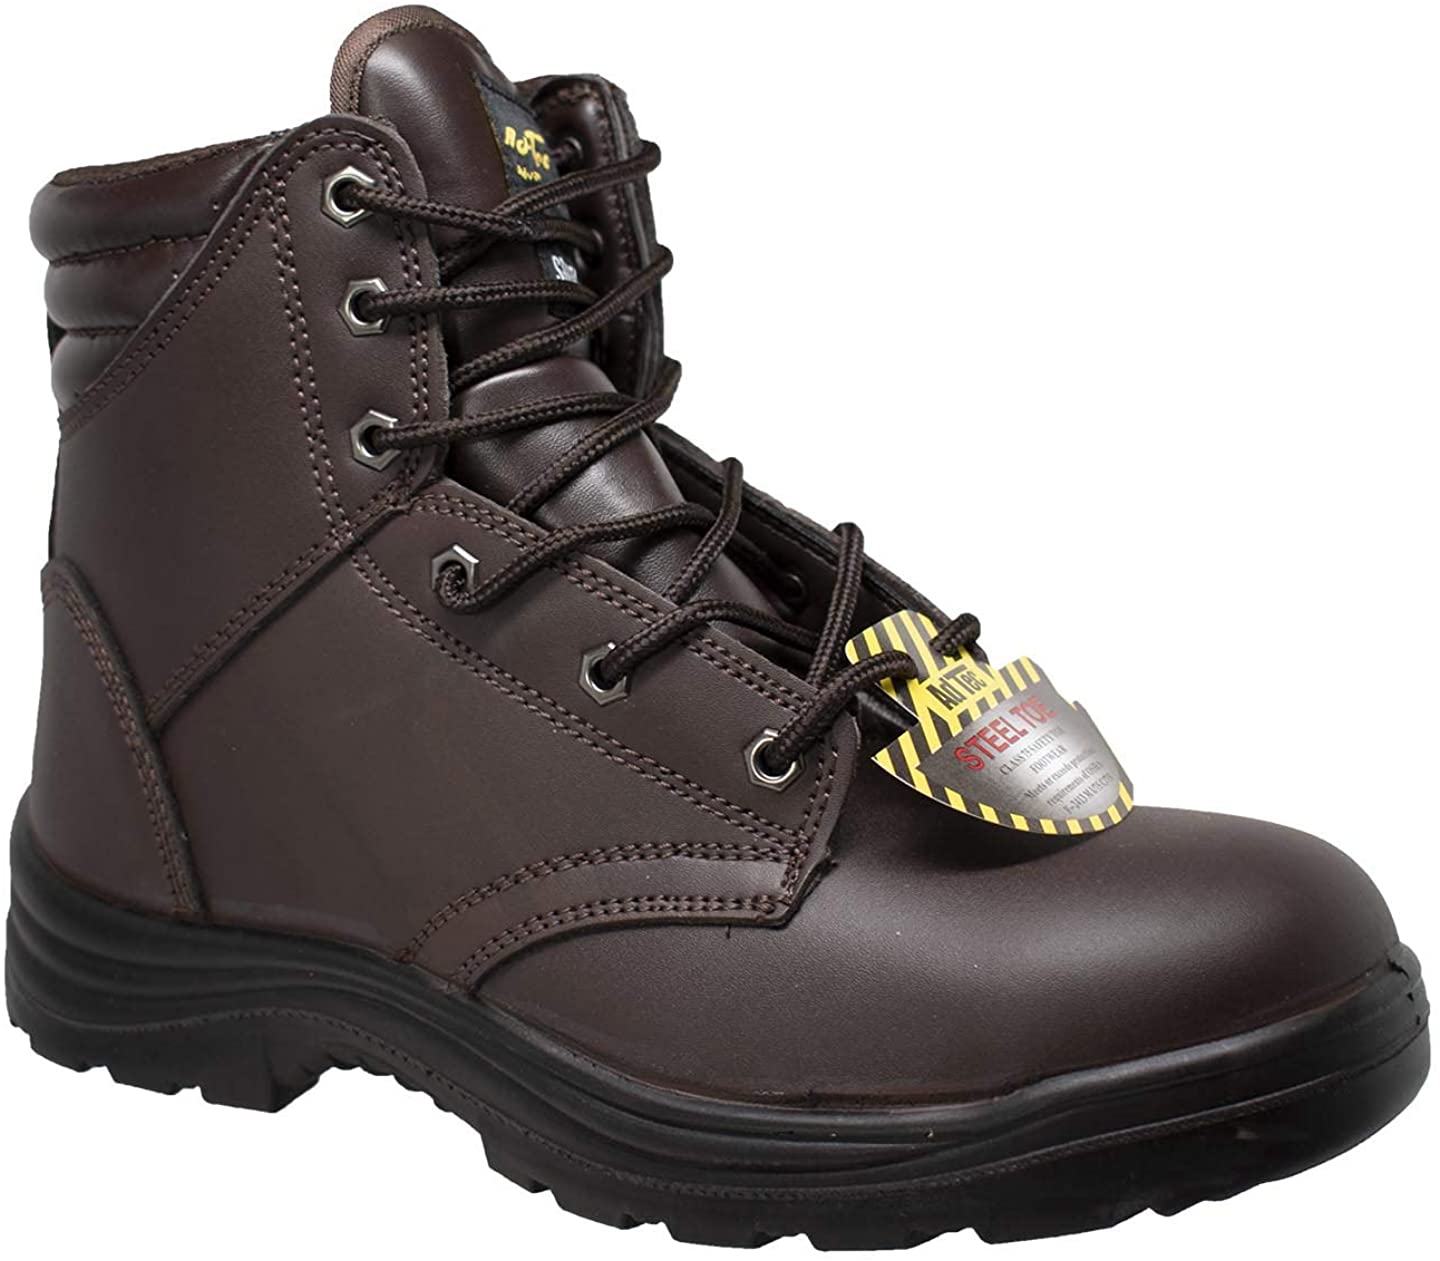 New Hypard AdTec Men's 6" Steel Toe Work Boot Brown